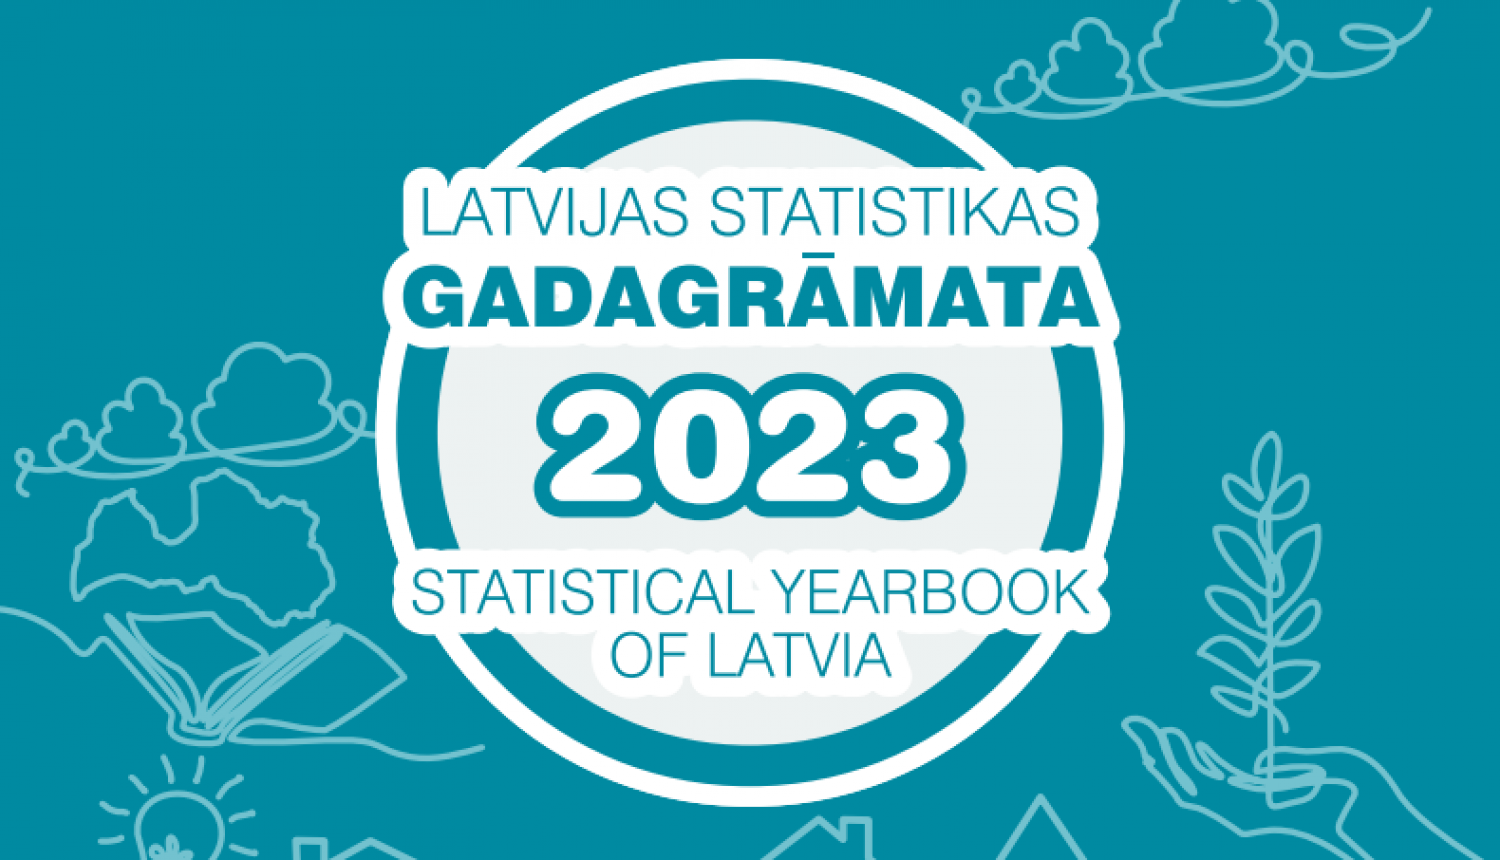 Vāka attēls ar grāmatas nosaukumu - Latvijas statistikas gadagrāmata 2023